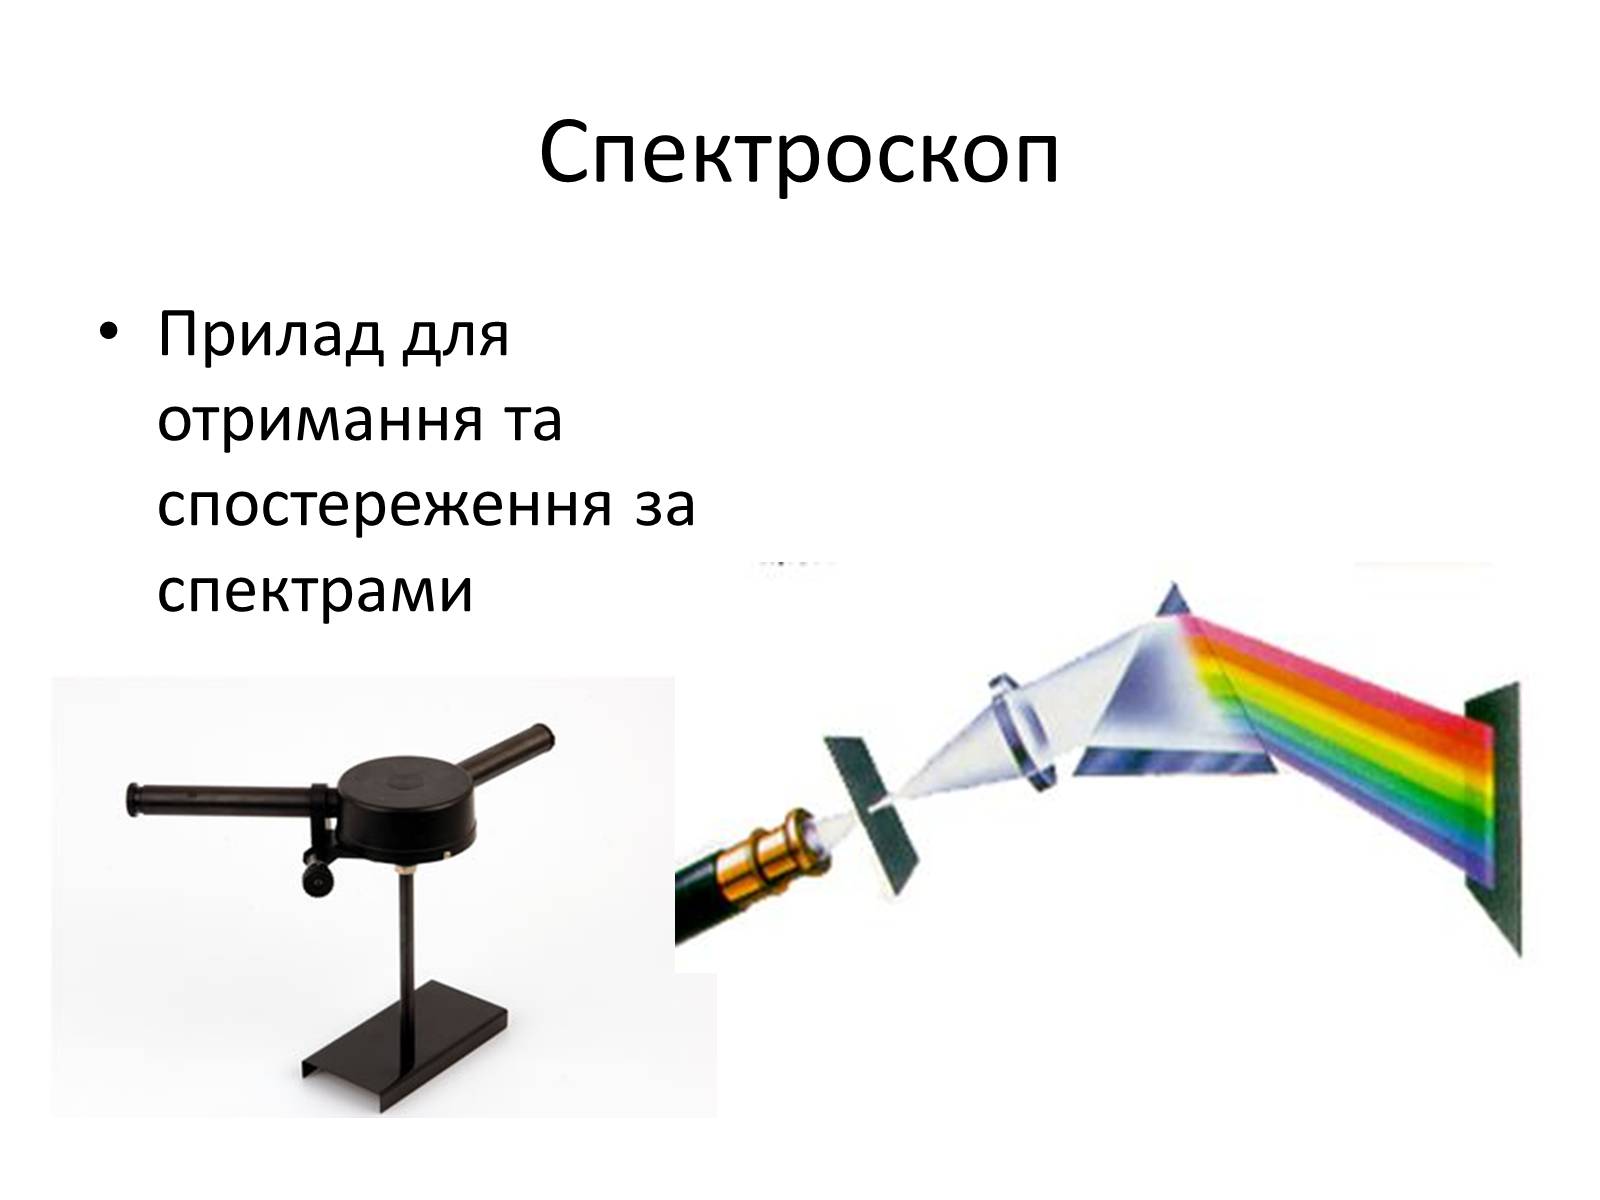 Принцип действия спектроскопа. Спектроскоп двухтрубный. Спектрограф спектрометр и спектроскоп. Приборы для исследования спектров спектроскоп, спектрограф. Двухтрубный спектроскоп схема.